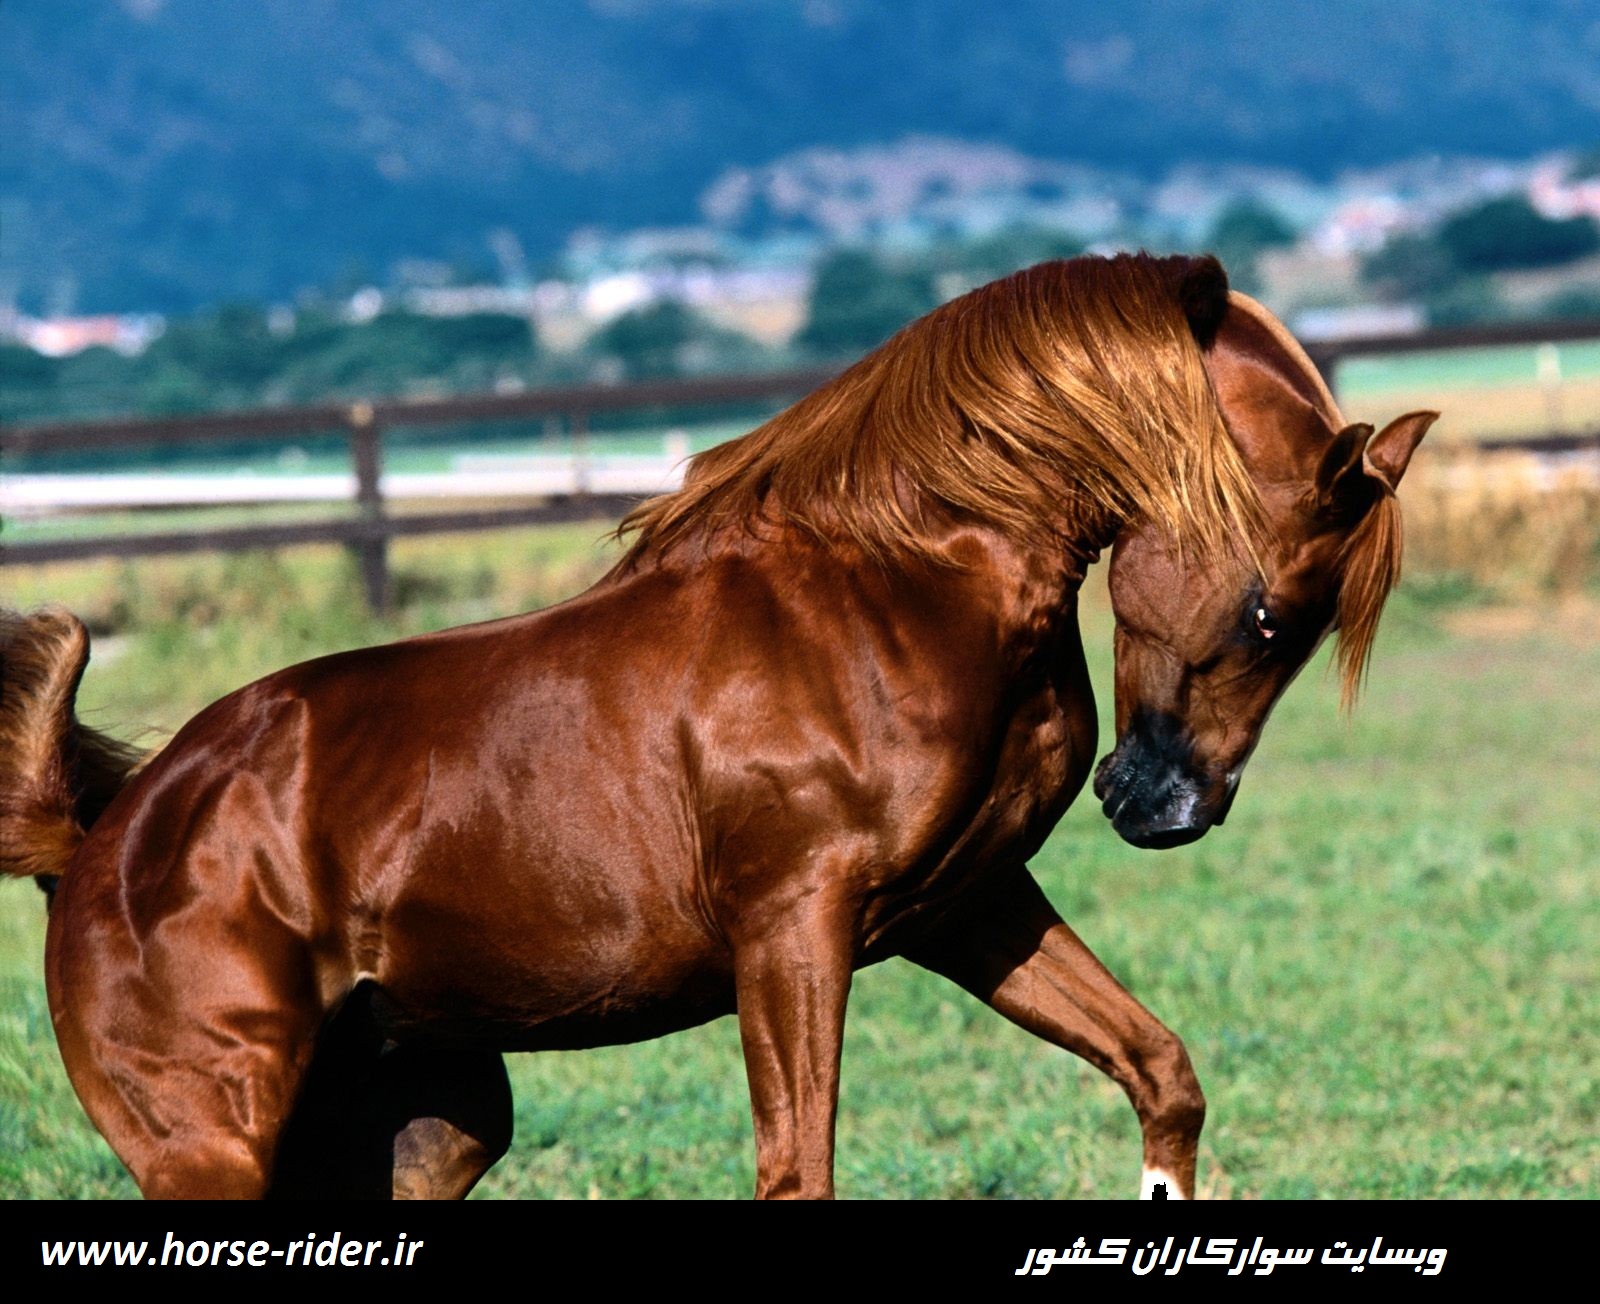 تصاویر اسب های زیبا (اسب هازینتی)جالب ترین وزیباترین اسب های جهان